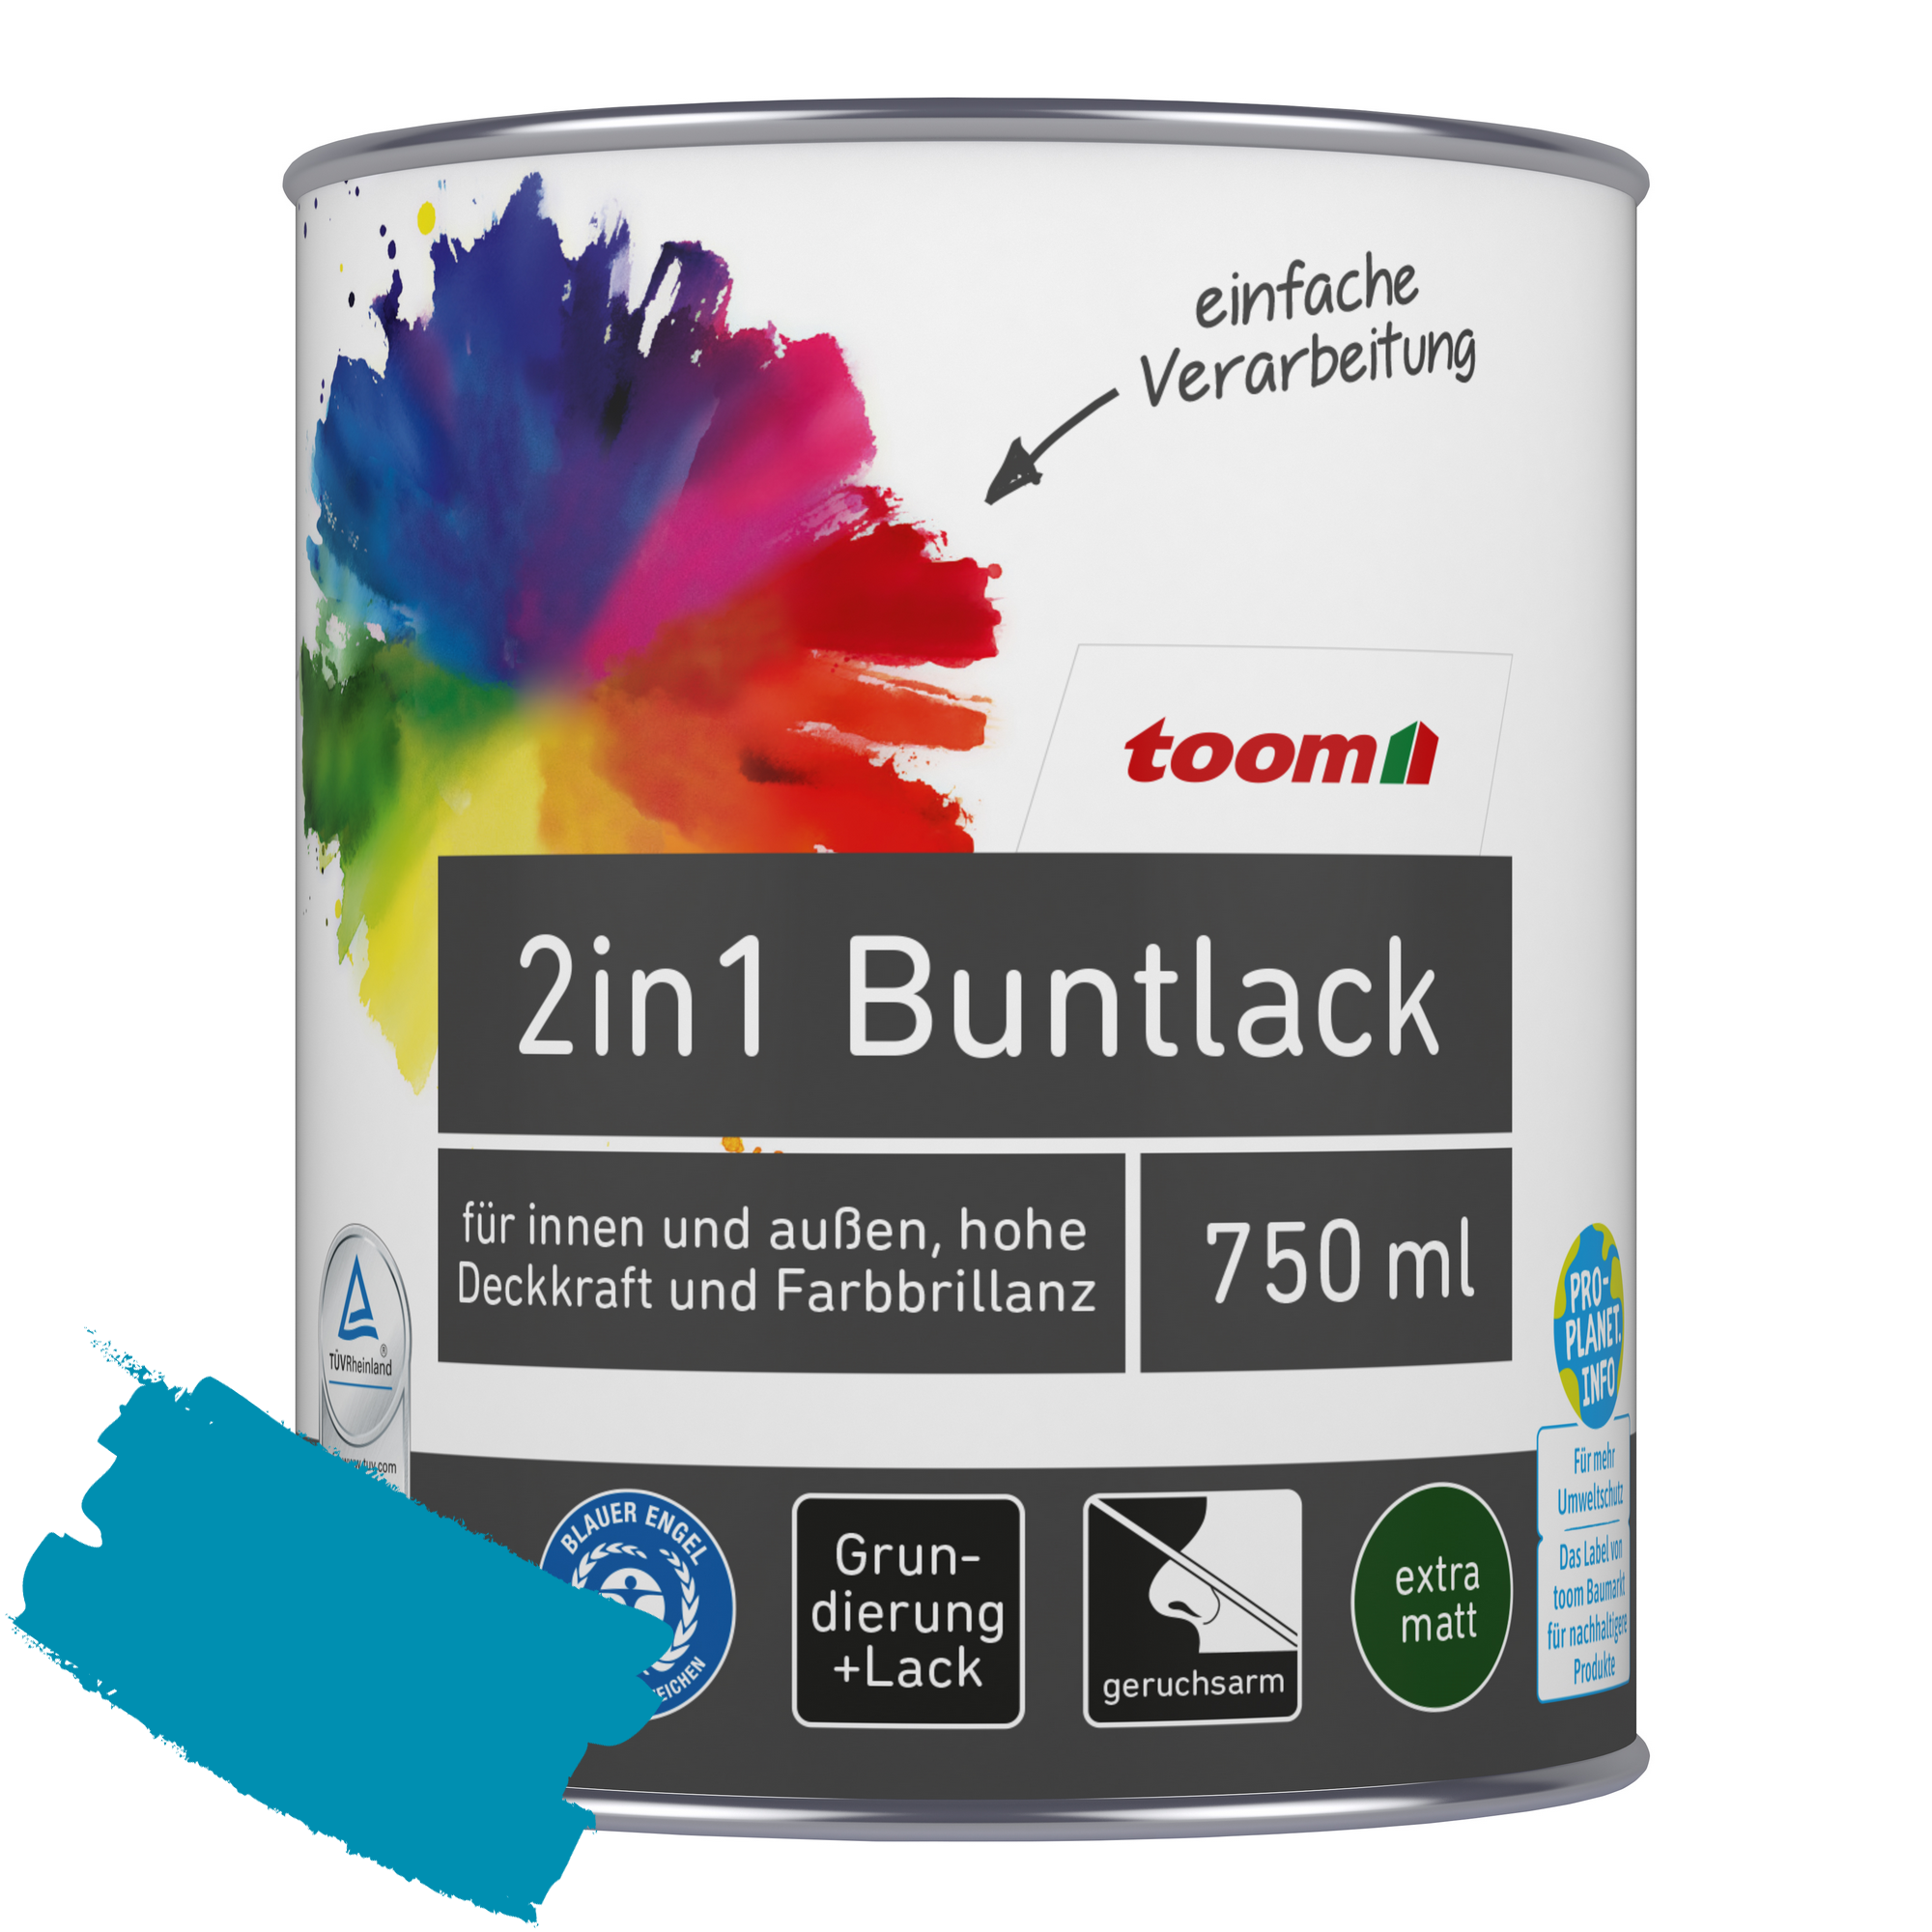 2in1 Buntlack 'Aquamarine' lichtblau matt 750 ml + product picture